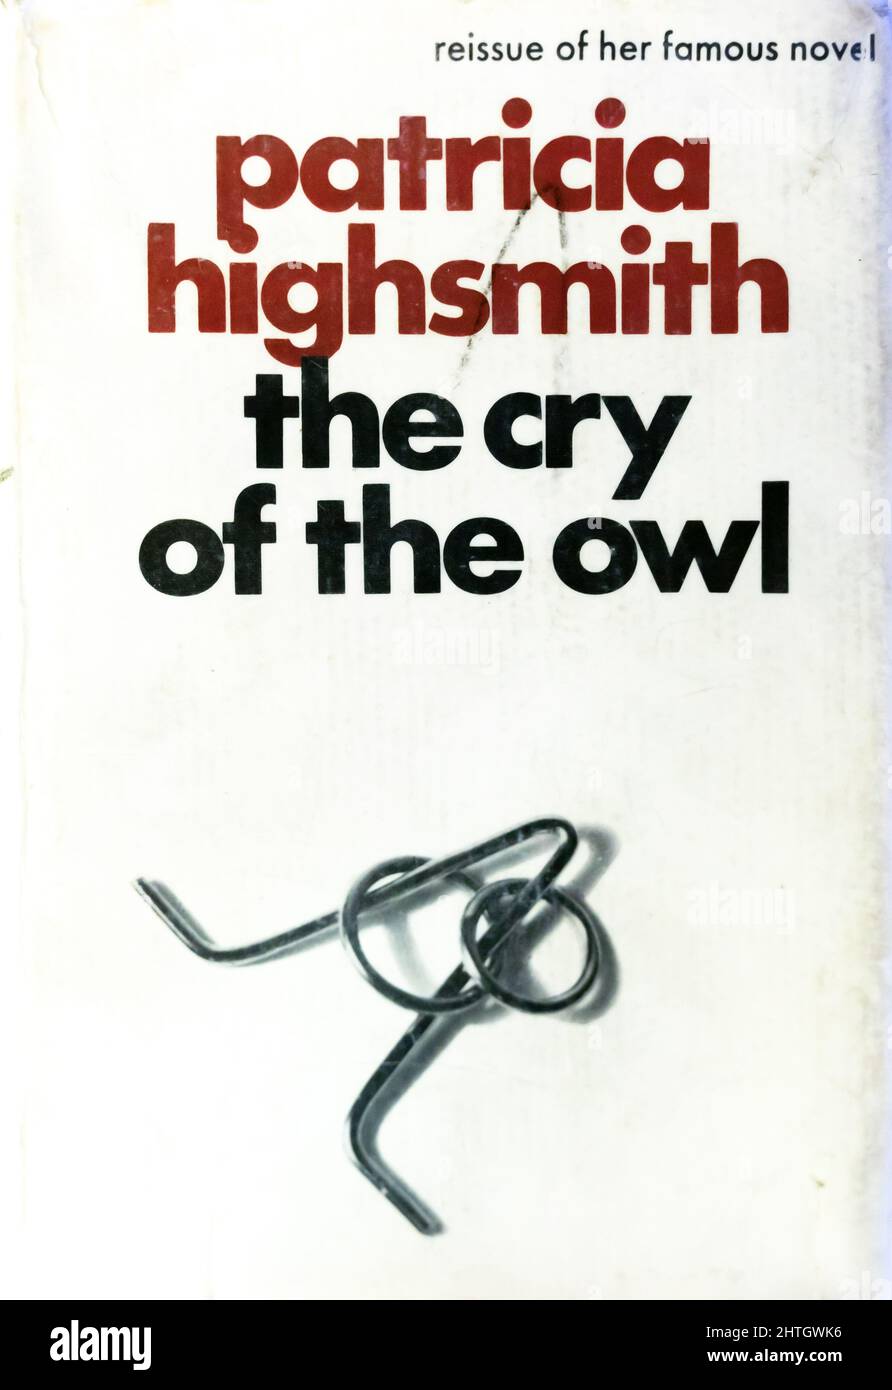 Copertina del libro di Patricia Highsmith Thriller romanzo psicologico The Cry of the Owl pubblicato per la prima volta nel 1962, questa edizione da Heinemann, Londra Foto Stock